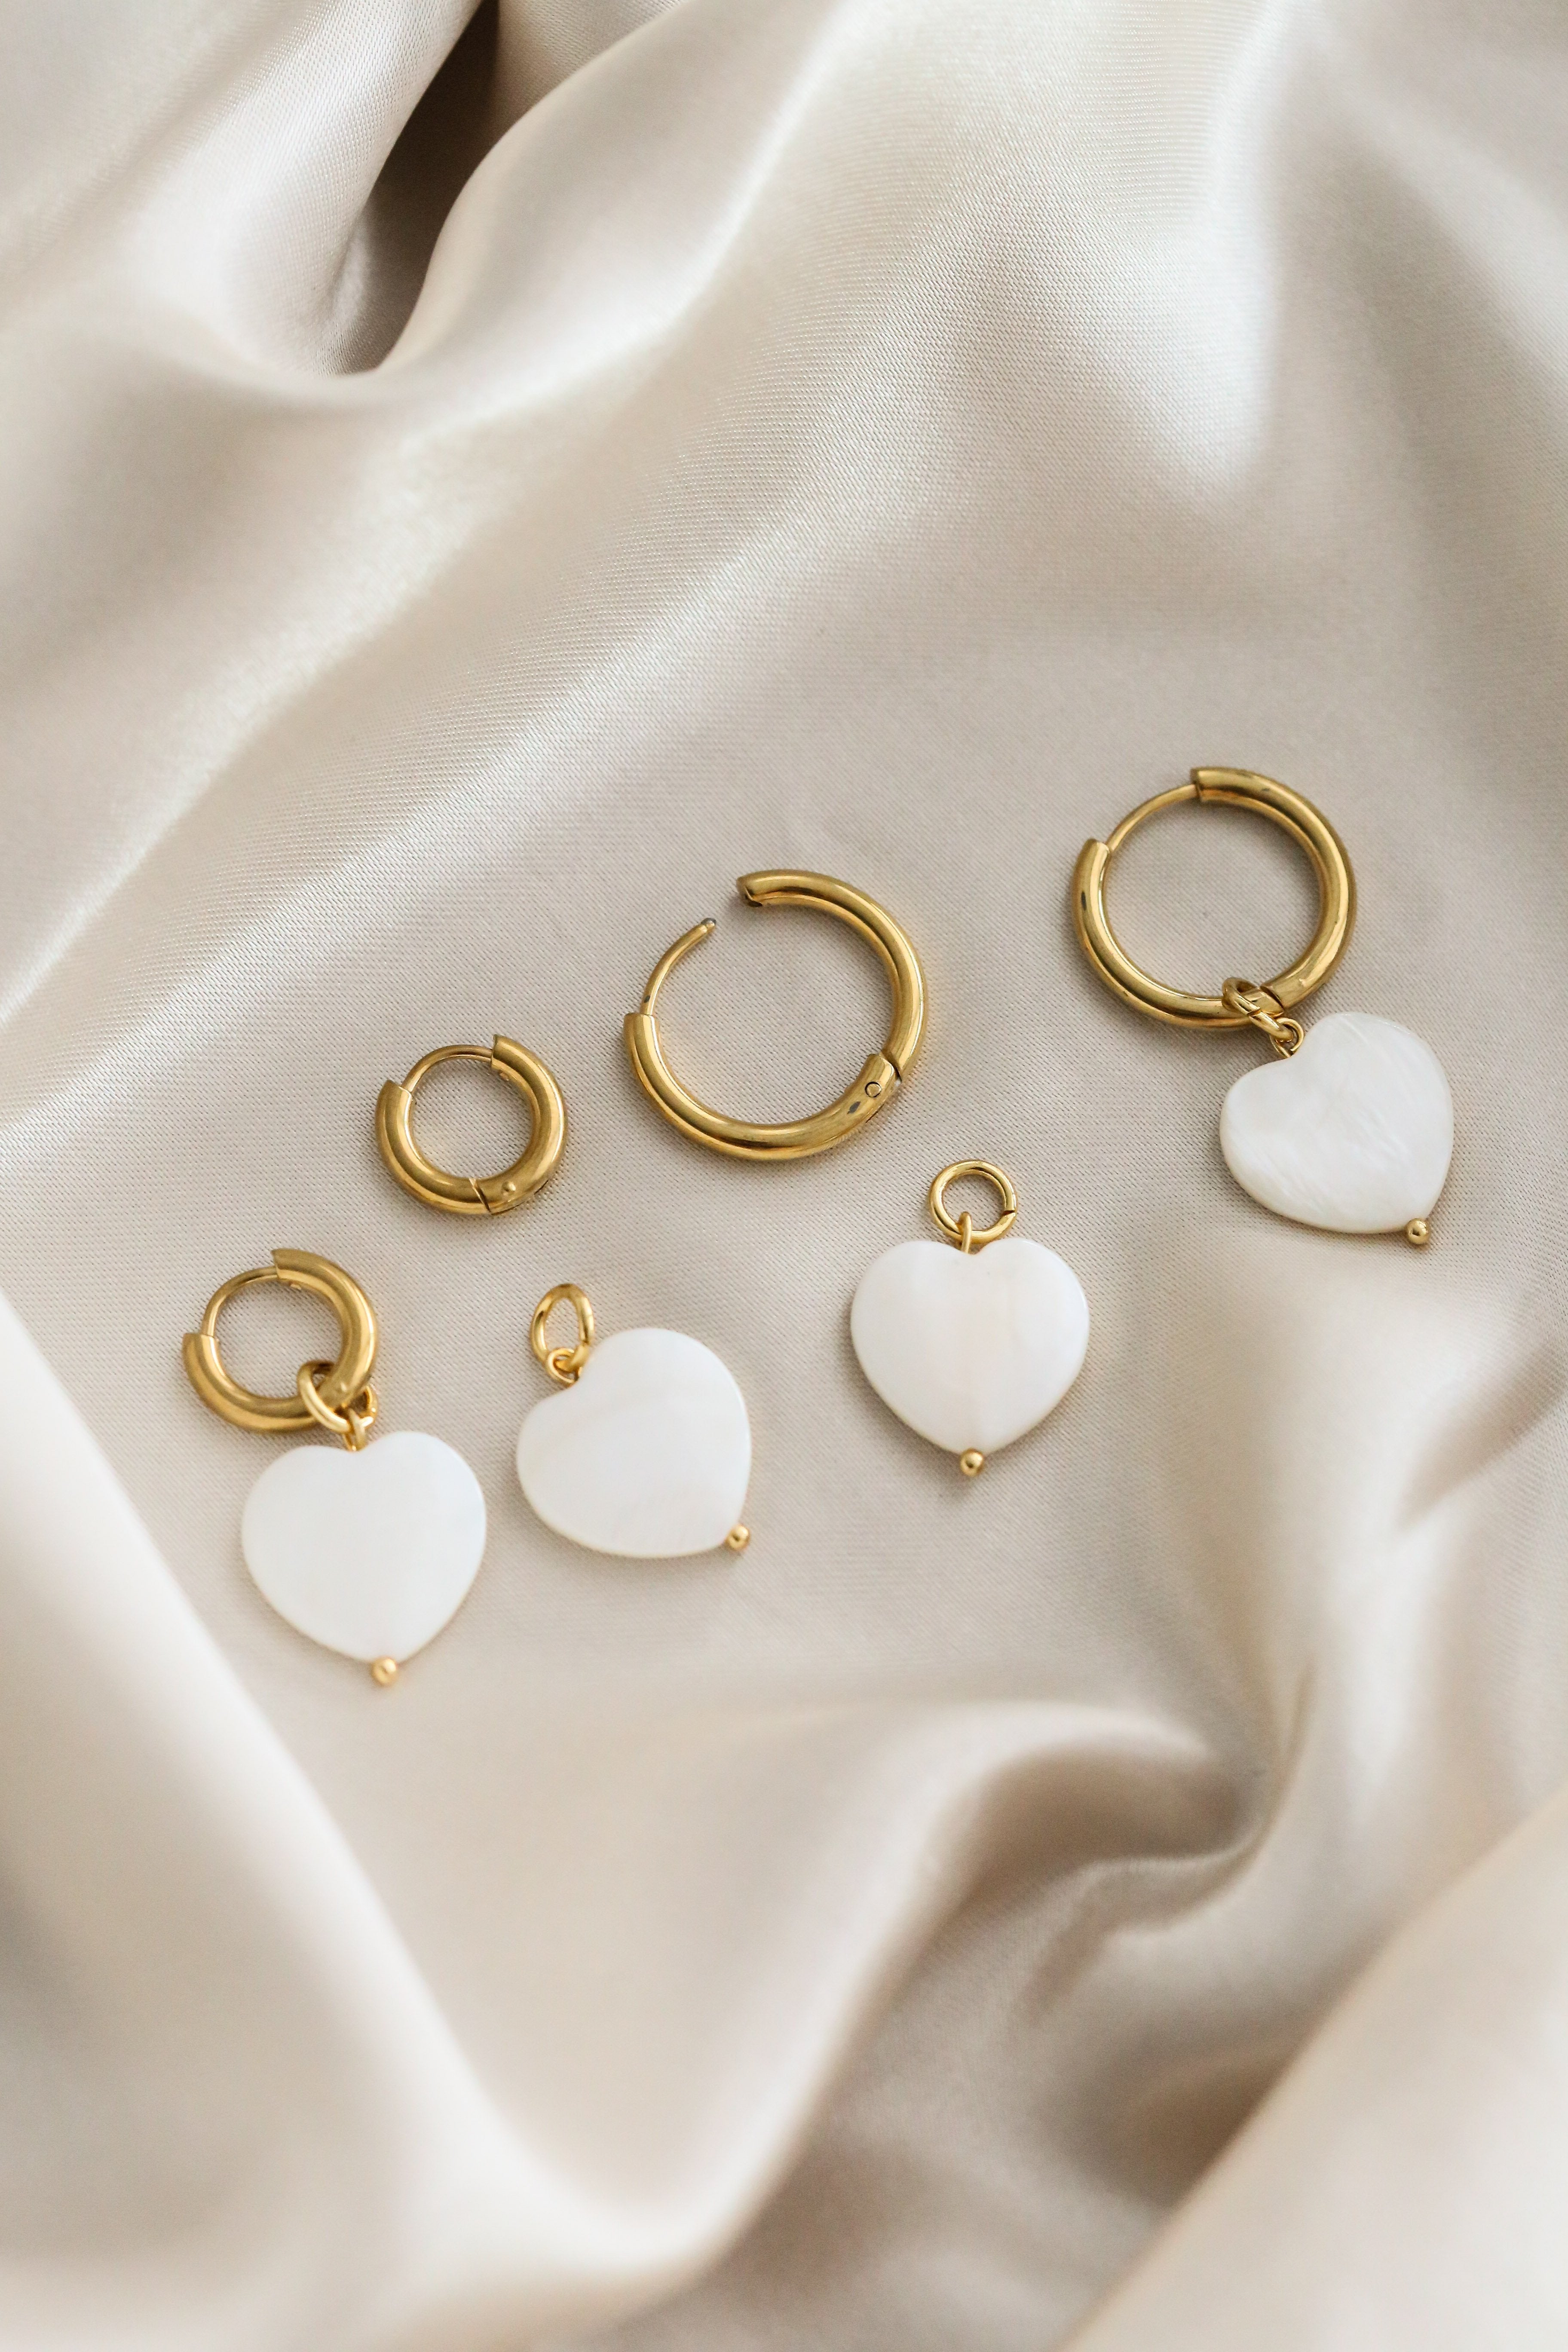 Emmeline Heart Hoop Earrings - Boutique Minimaliste has waterproof, durable, elegant and vintage inspired jewelry